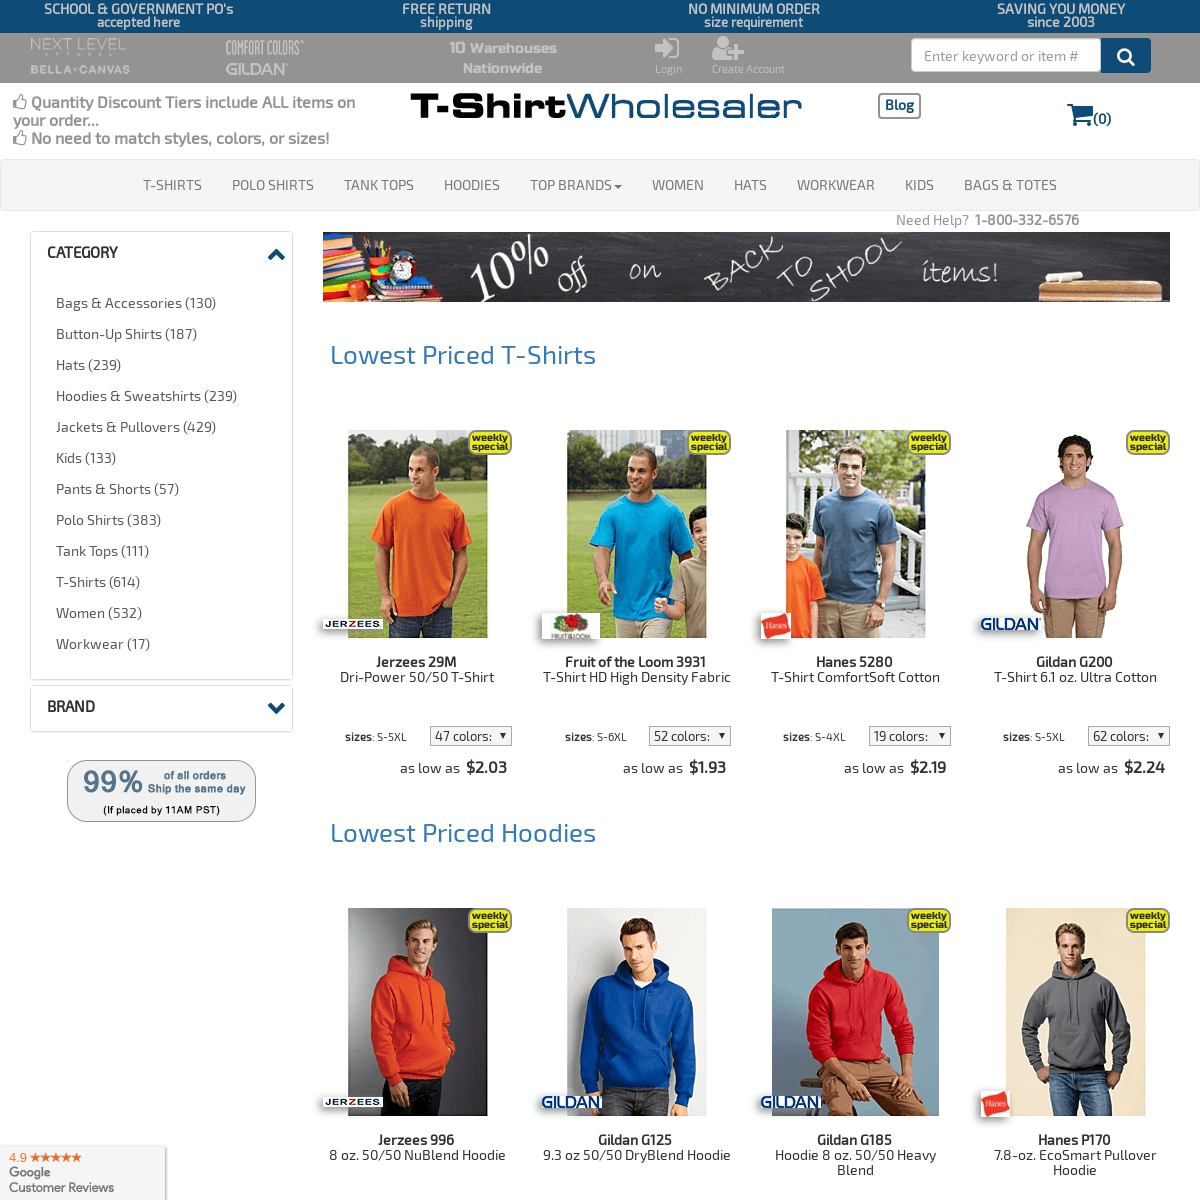 A complete backup of t-shirtwholesaler.com